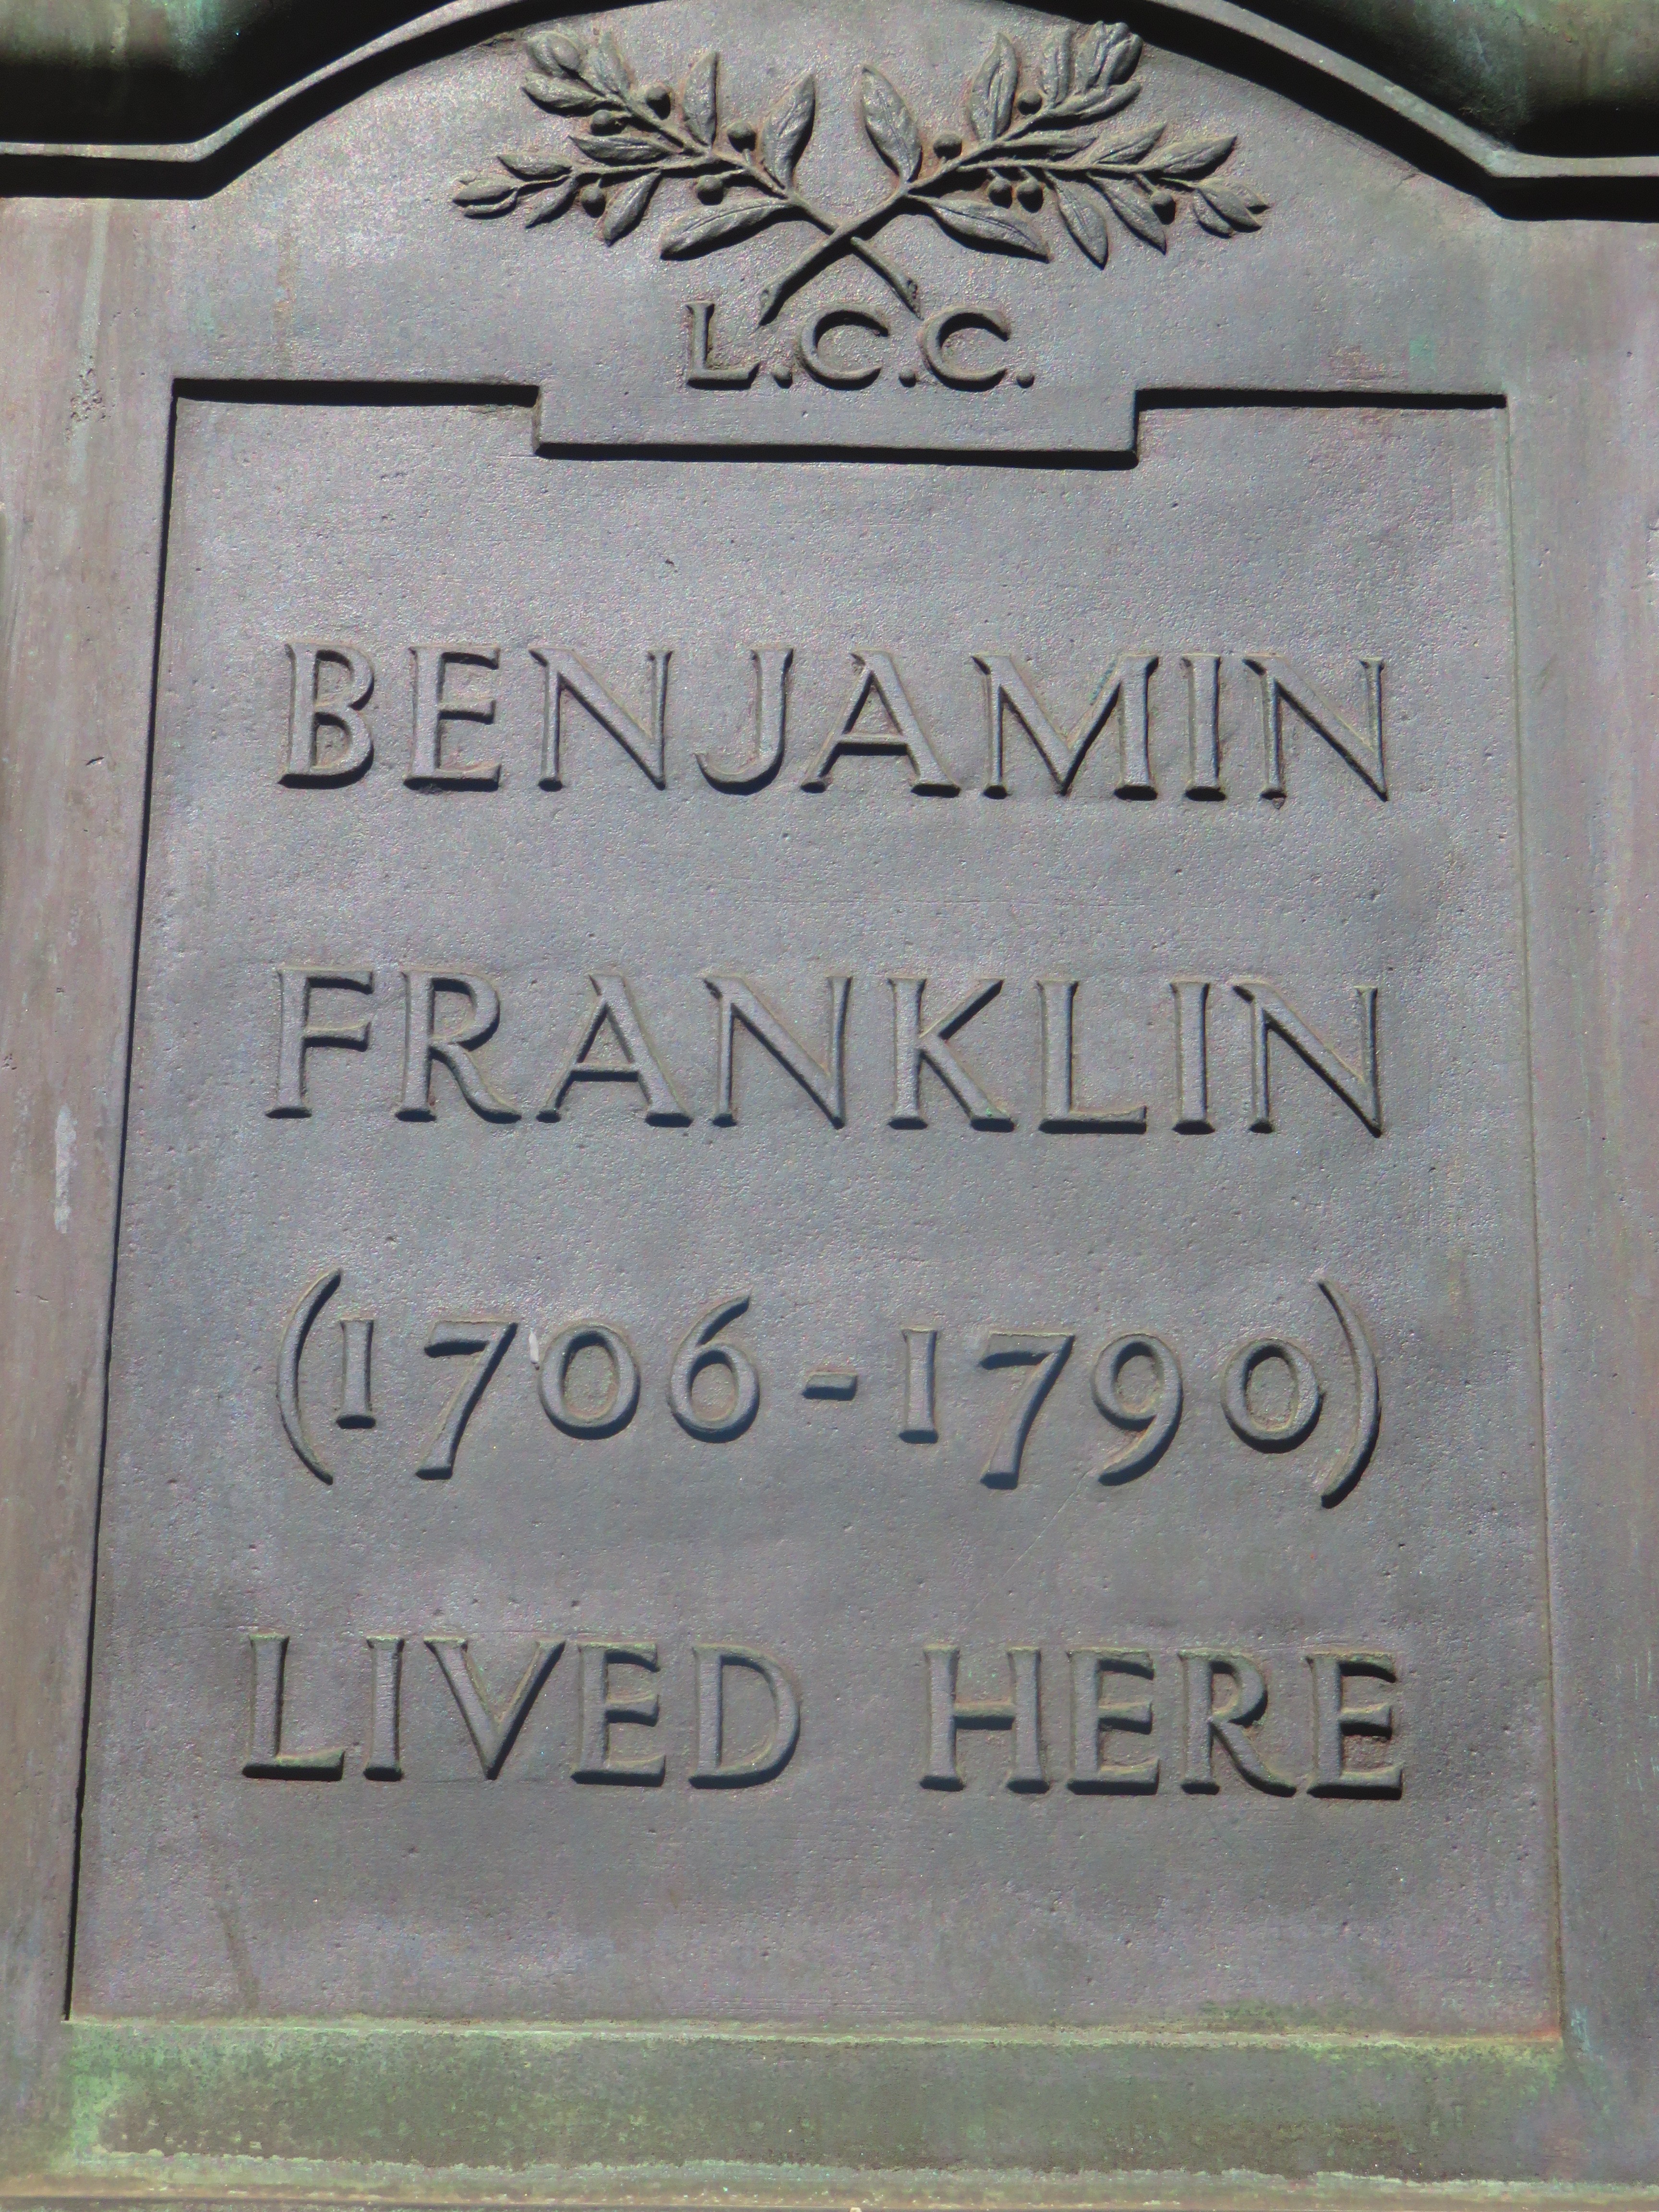 Benjamin Franklin House, London